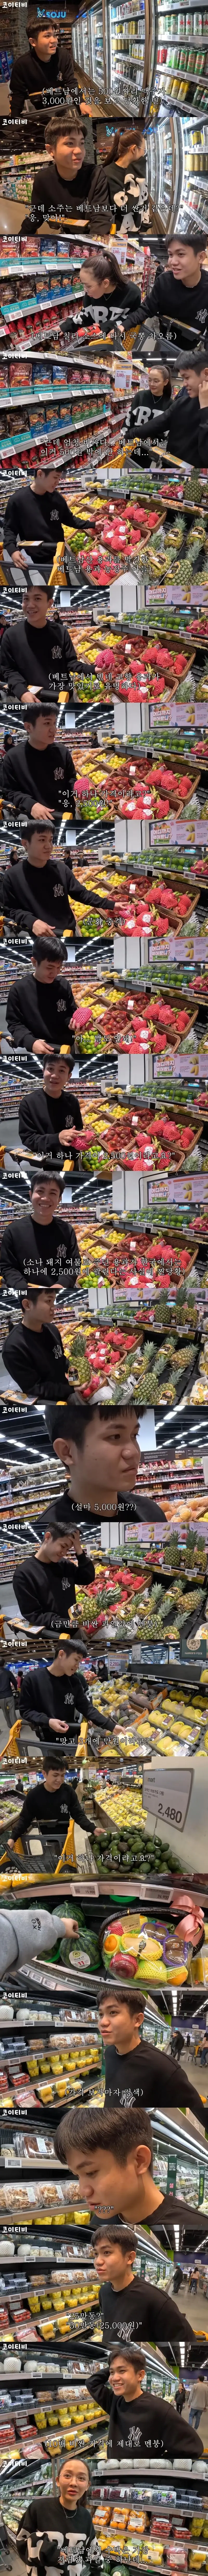 한국 과일 가격에 화들짝 놀란 베트남 사람 ㄷㄷ.jpg